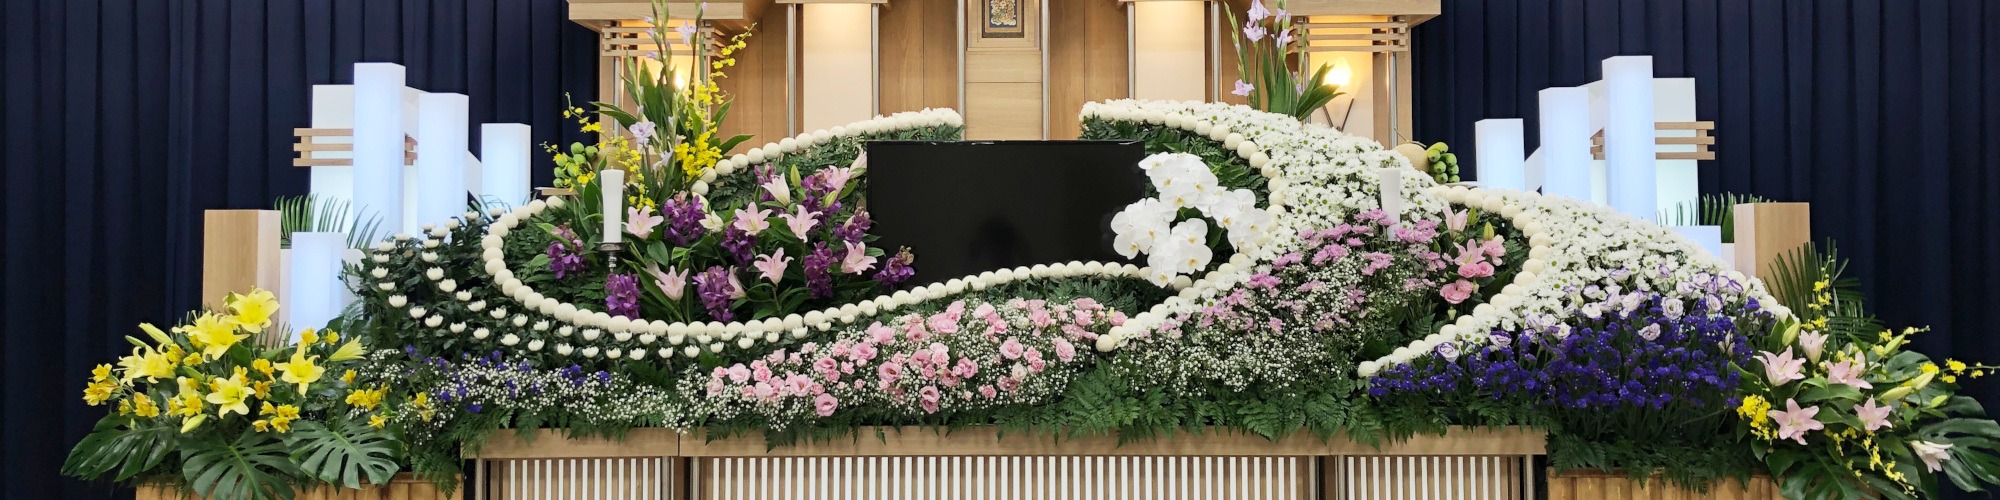 葬儀の事例 ヘッダー画像